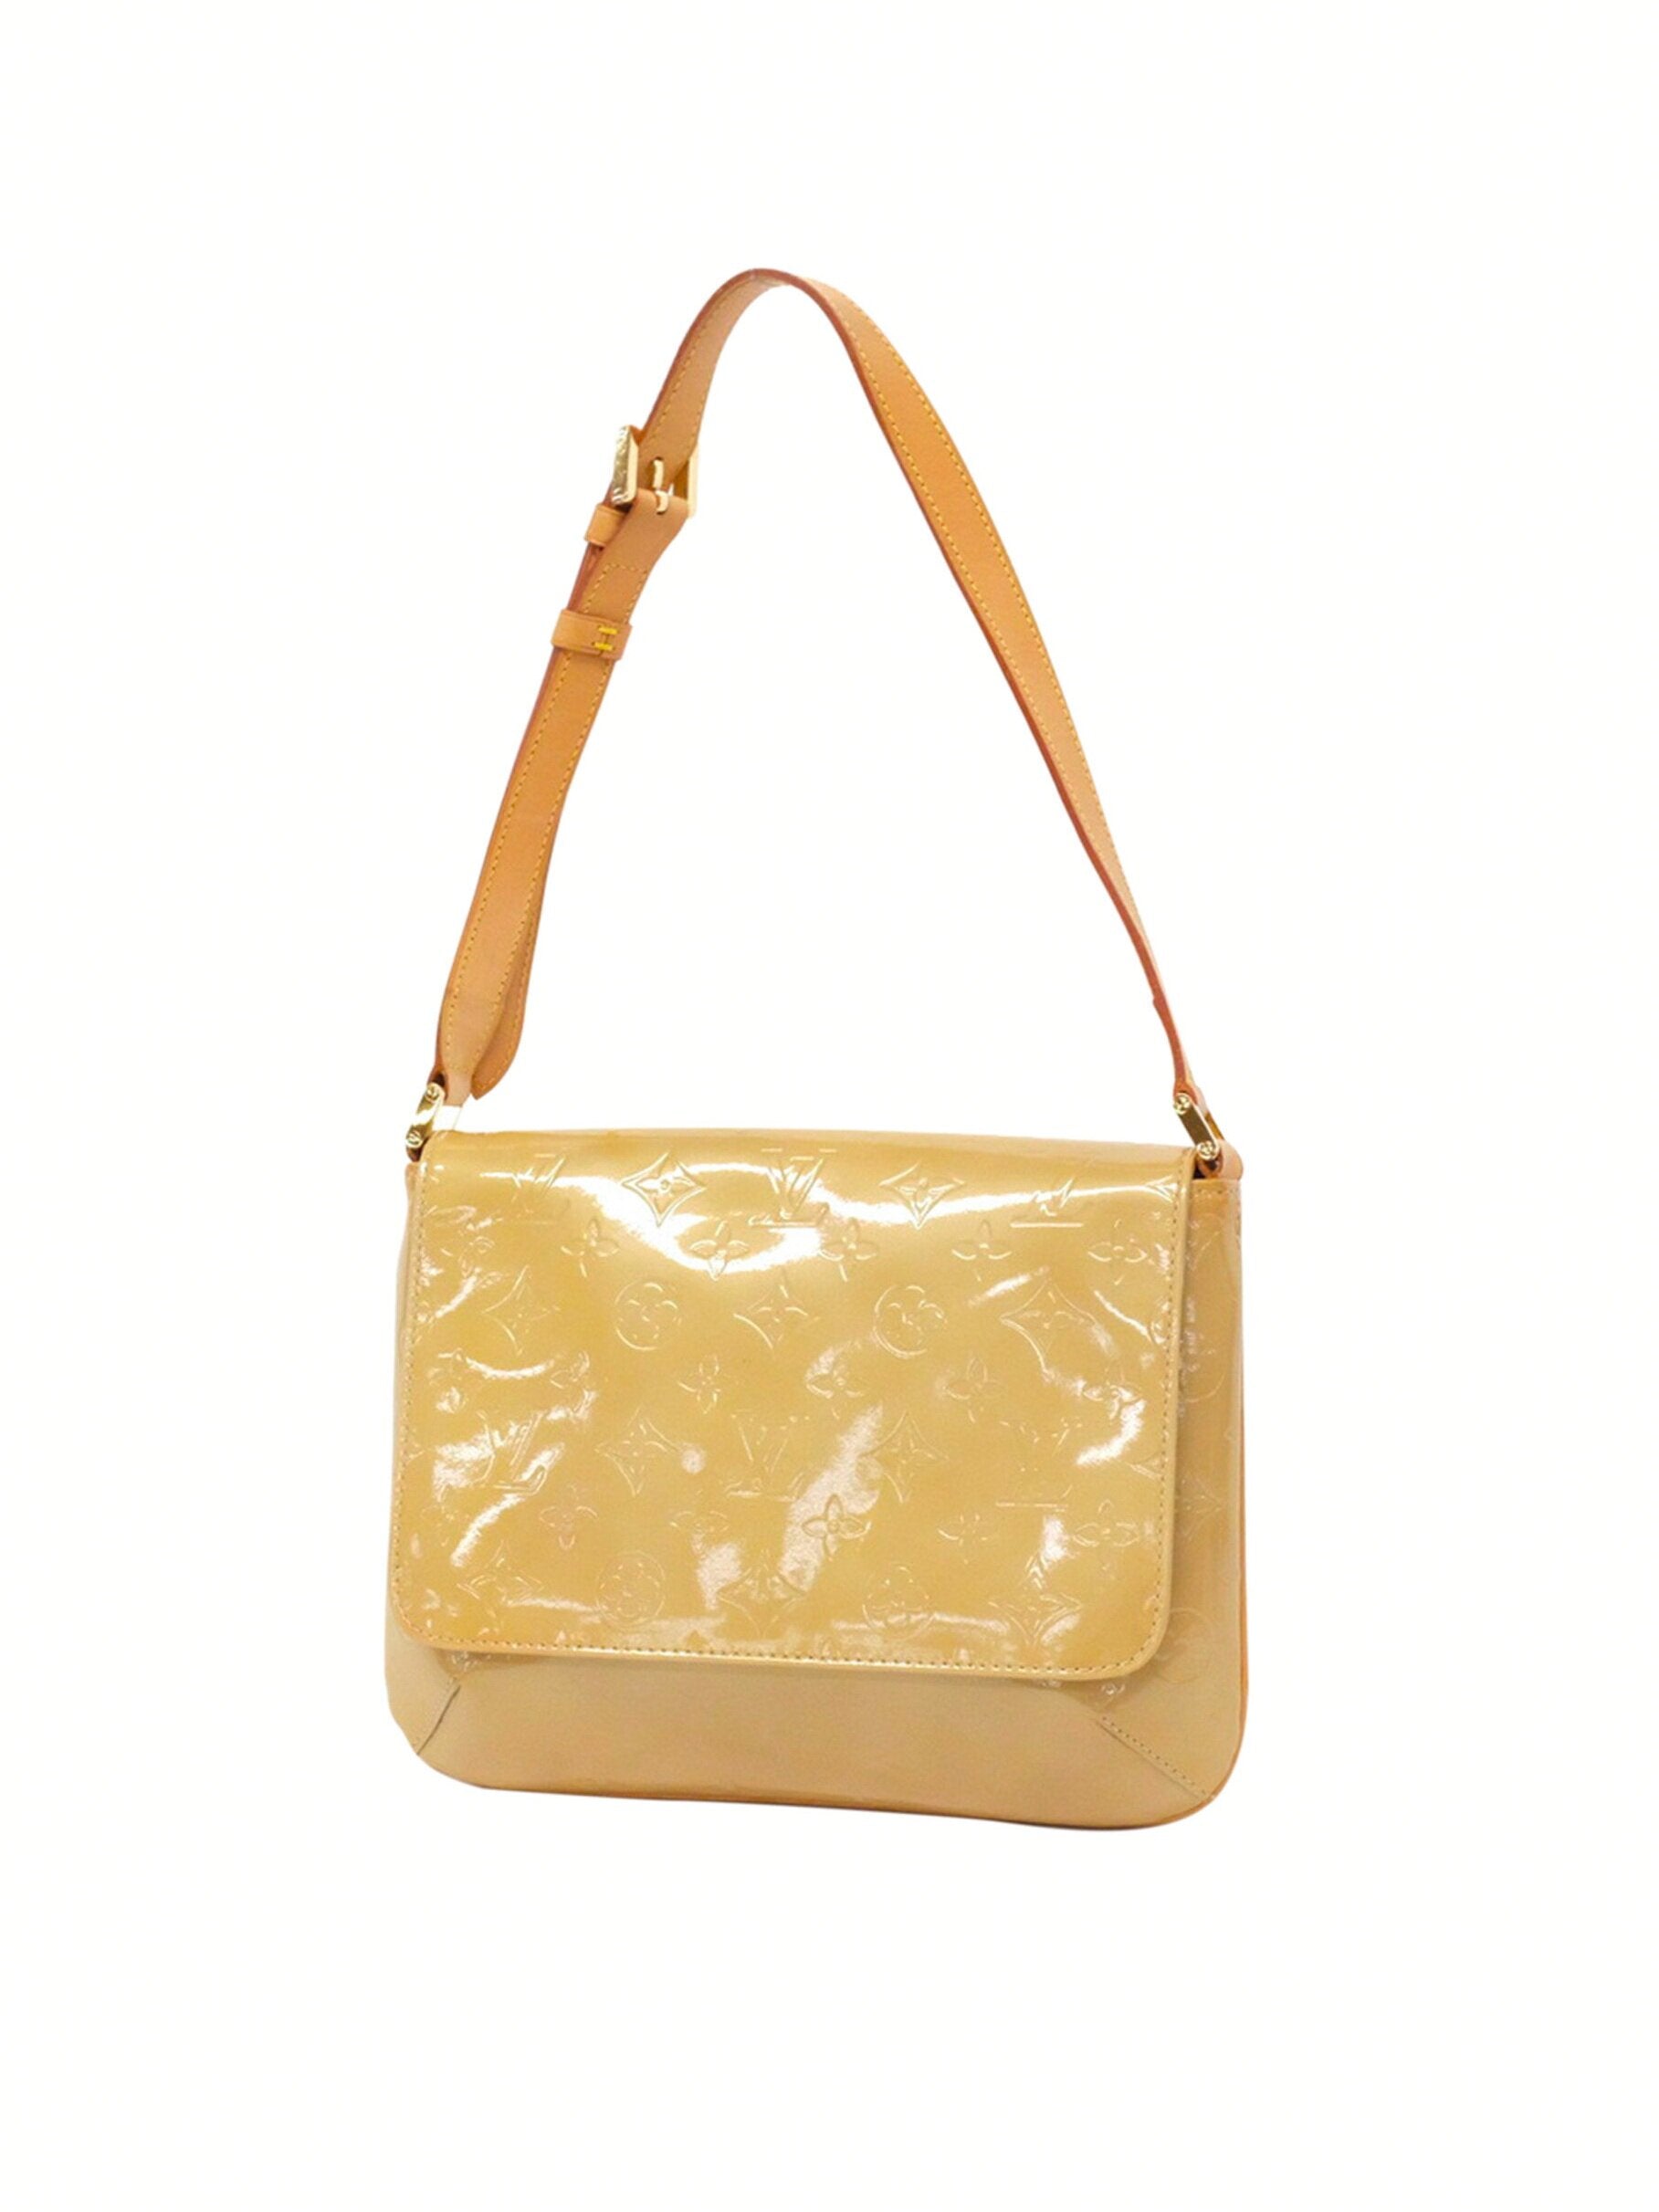 Louis Vuitton 2000s Yellow Vernis Shoulder Bag